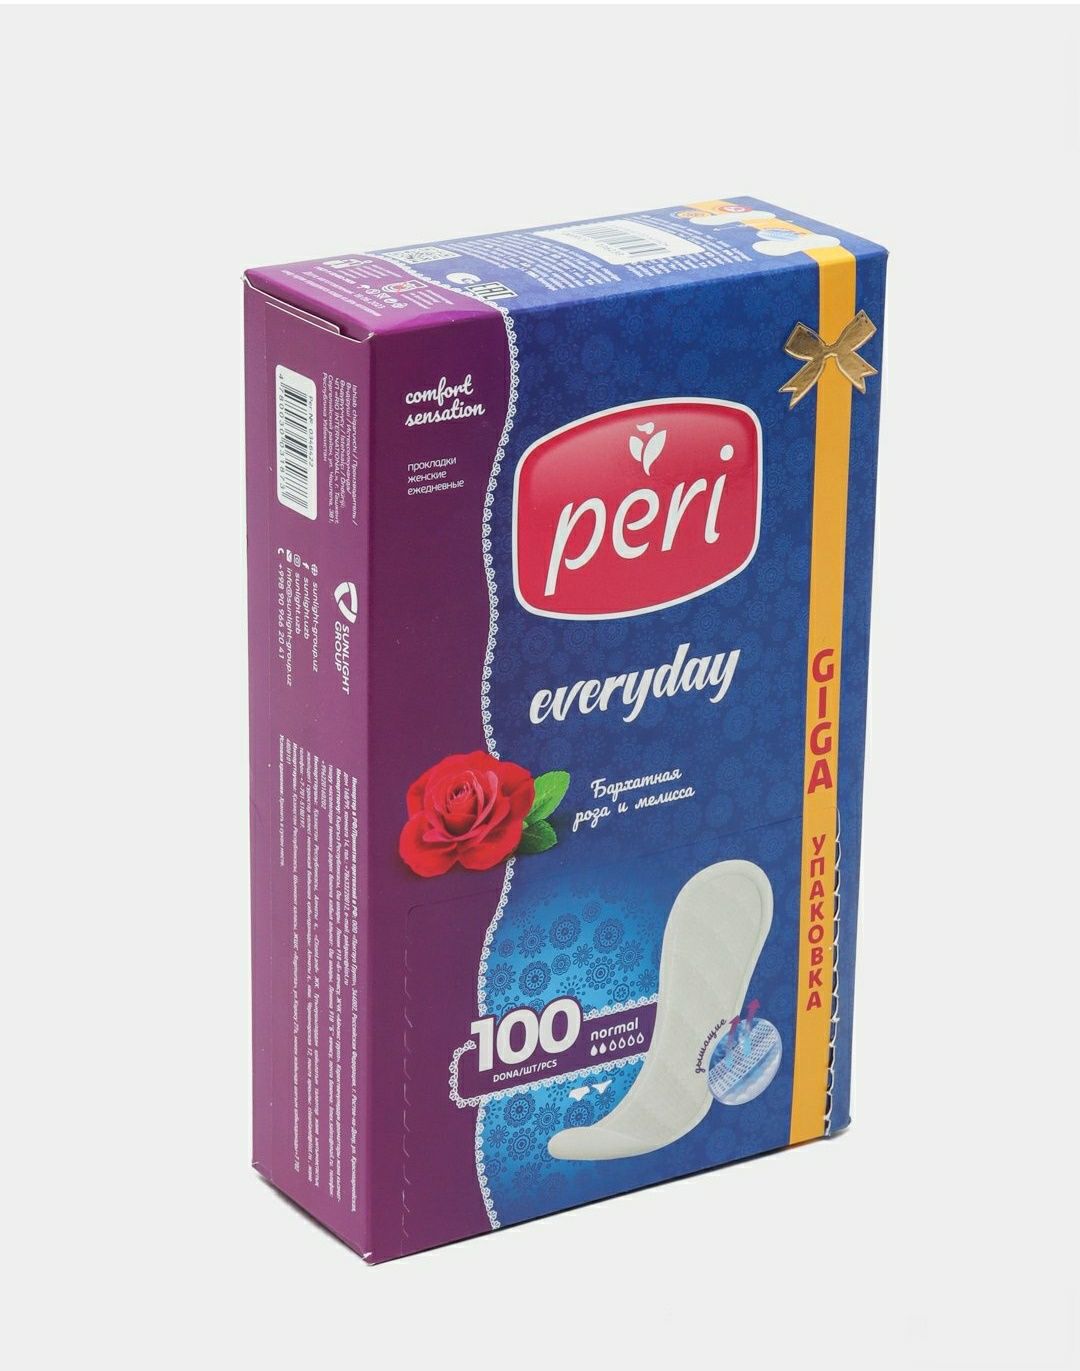 Гигиенические ежедневный прокладки женские "Peri" 100шт